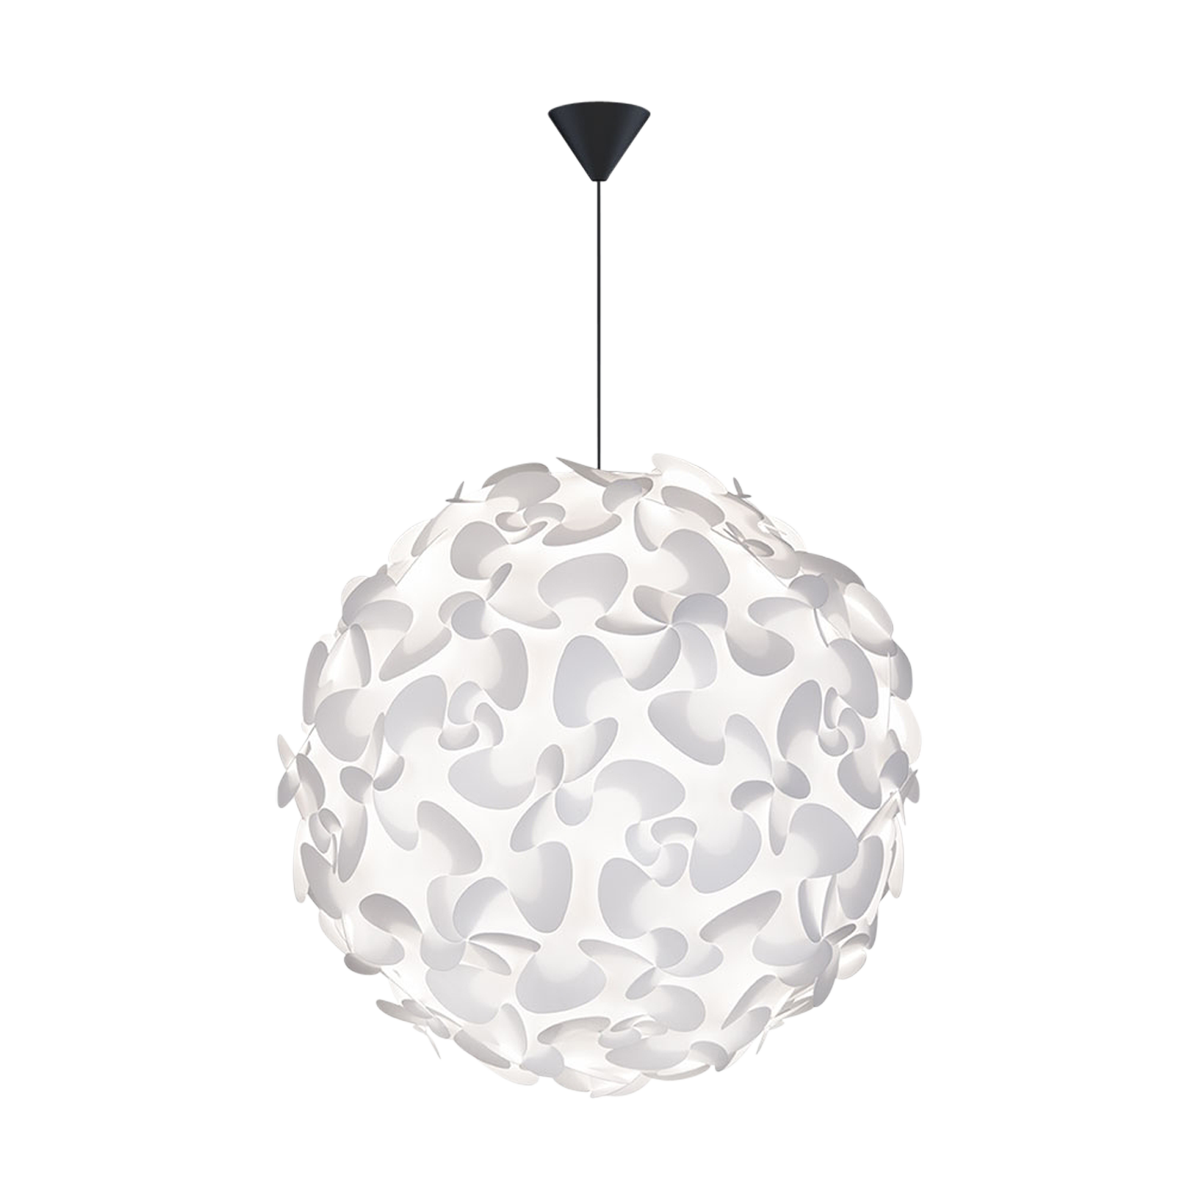 Lora X-Large hanglamp white - met koordset zwart - Ø 75 cm